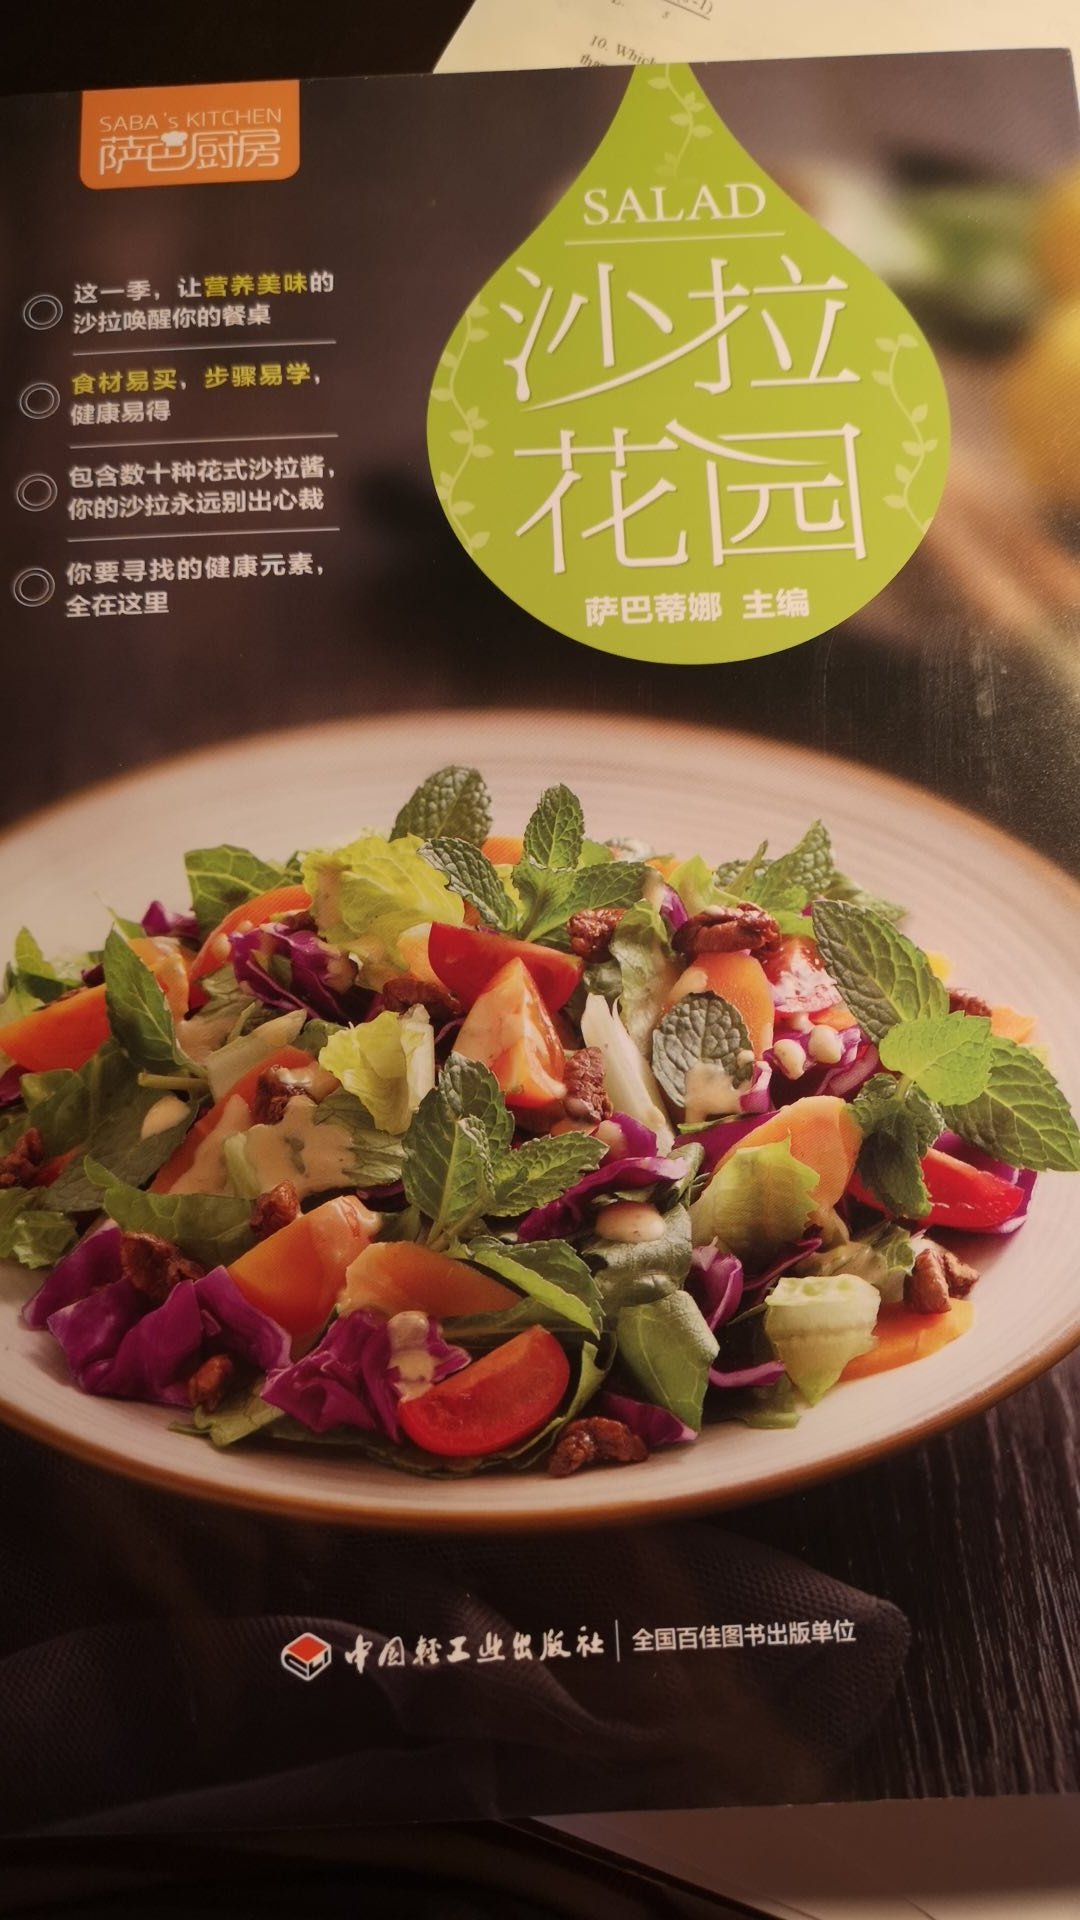 仔细看了下这本书挺好的 提供了好多做salad的新思路 适合减肥的朋友们哈哈